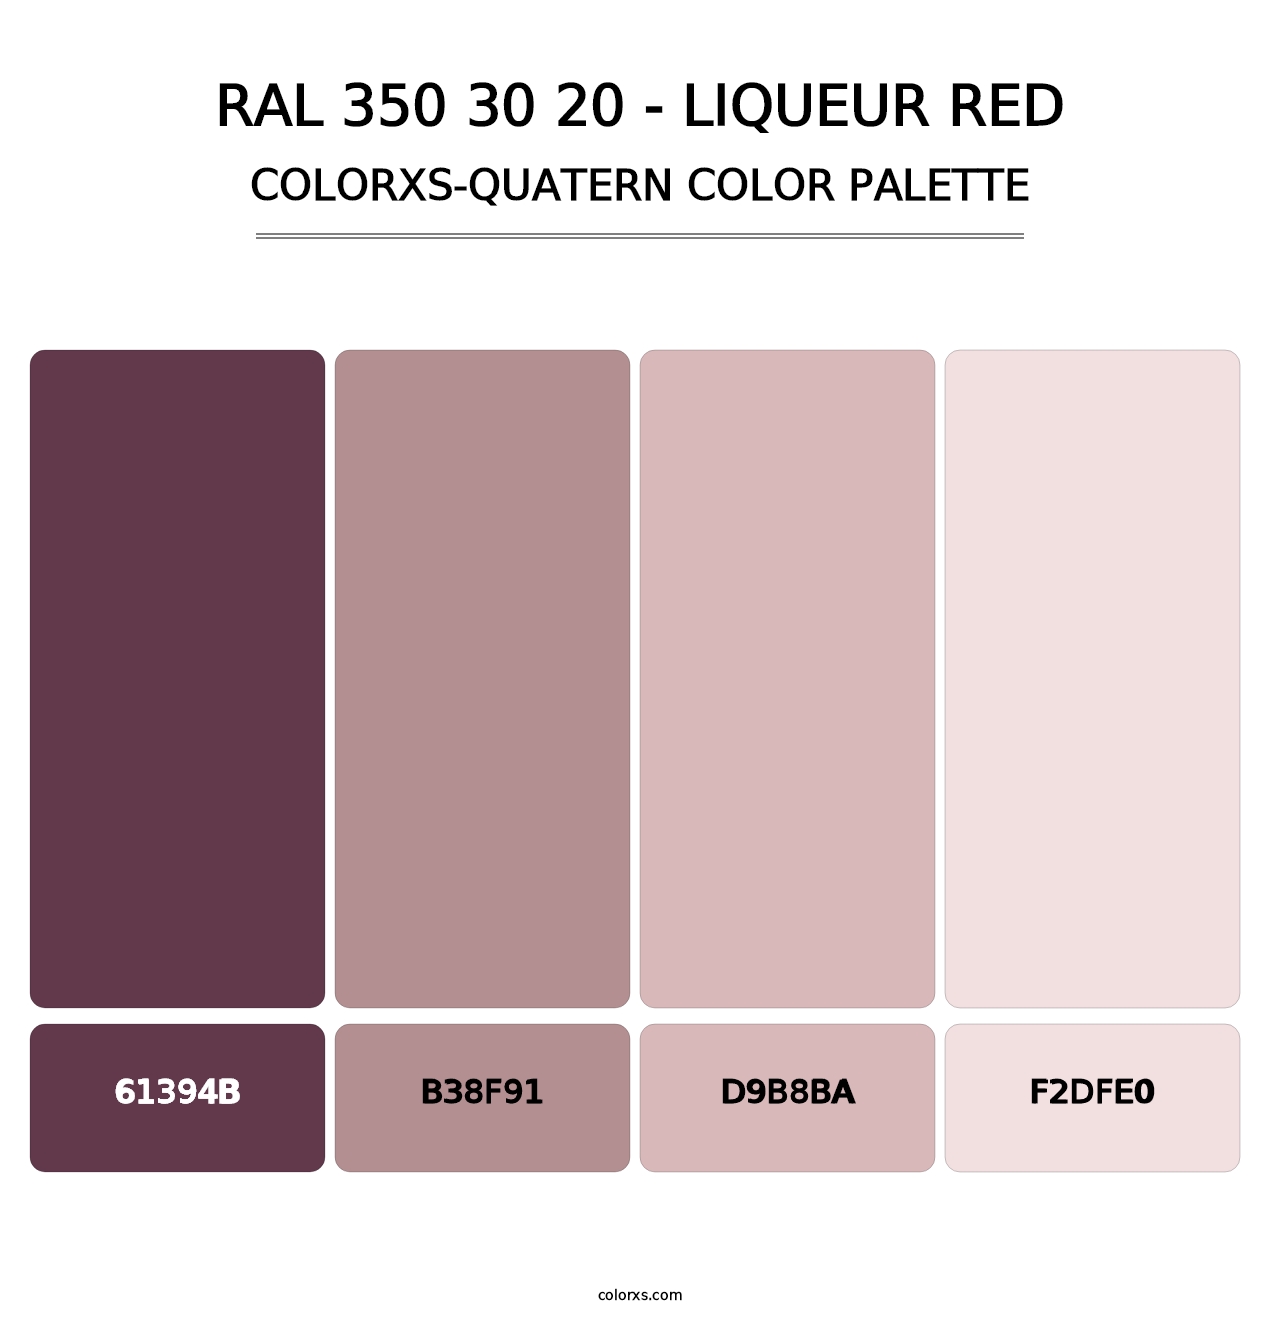 RAL 350 30 20 - Liqueur Red - Colorxs Quatern Palette